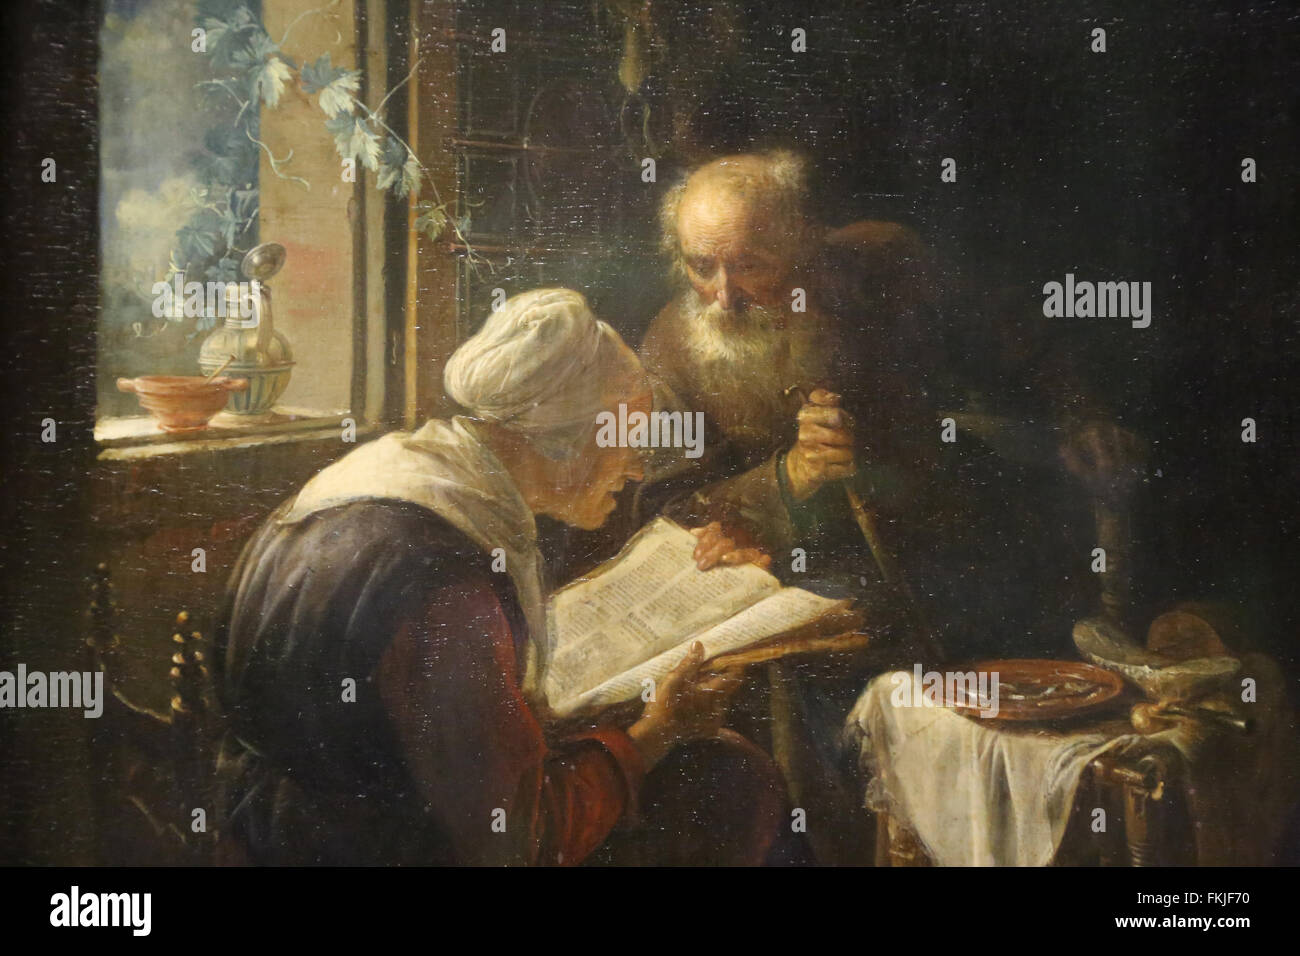 Gerad Dou (1613-1675). Dutch painter. Reading the Bible, 1645. Louvre Museum. Paris. France. Stock Photo